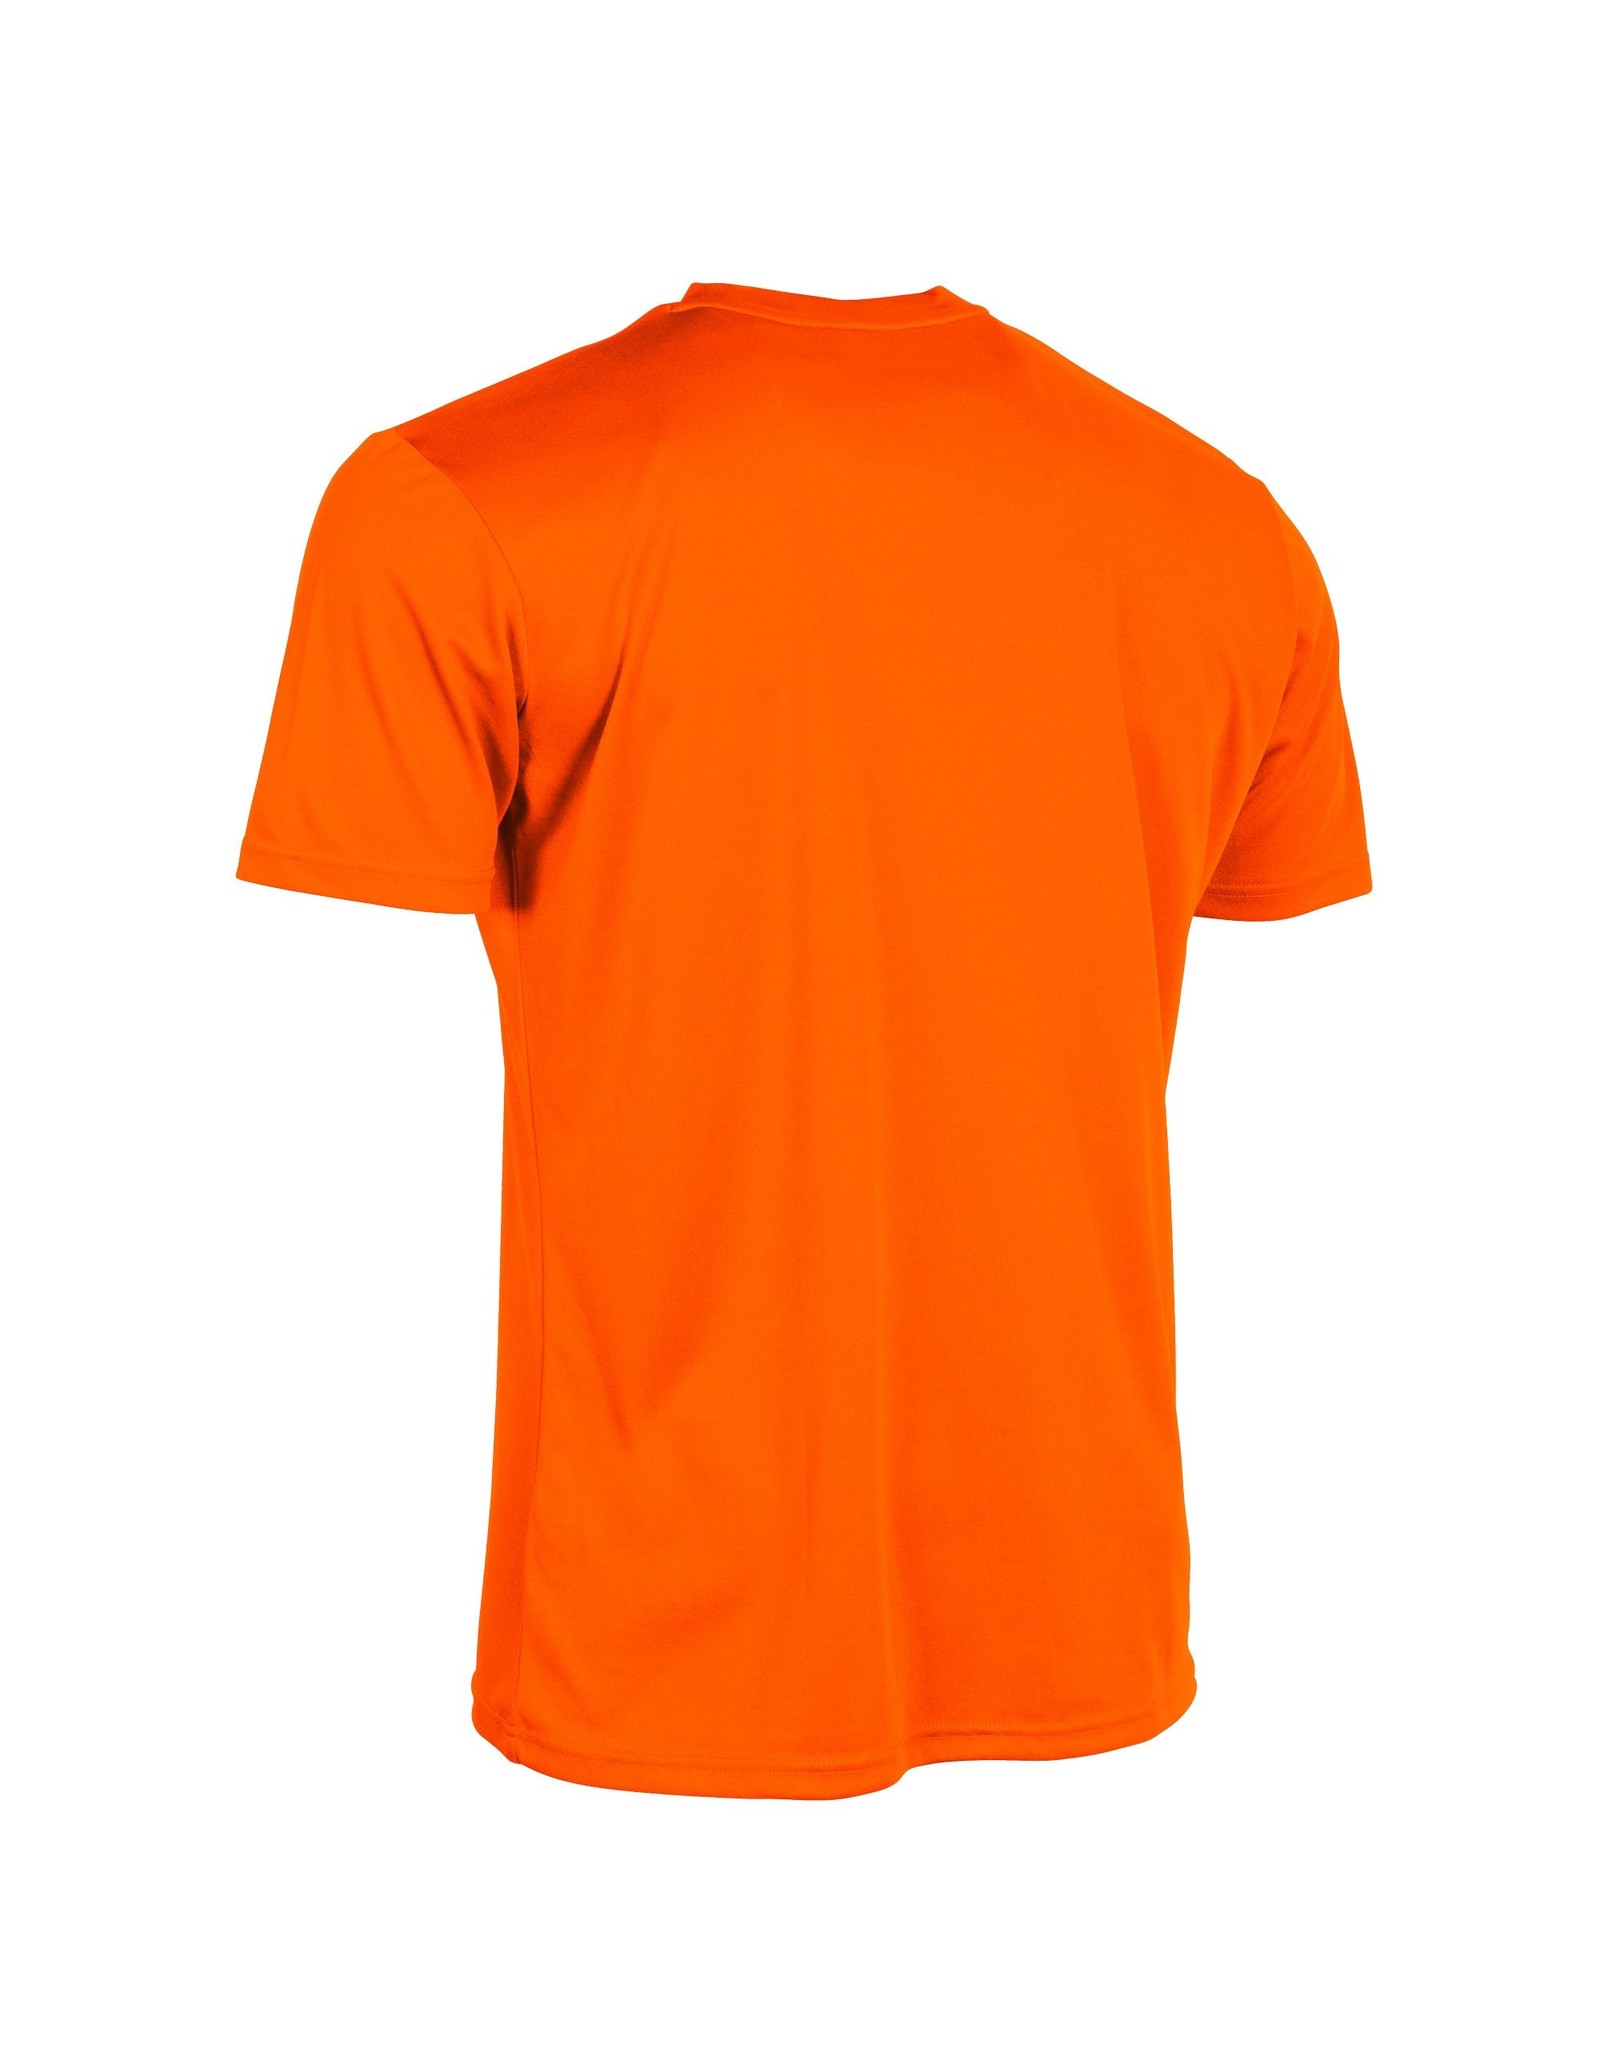 Stanno Holland Limited Shirt-Neon Orange